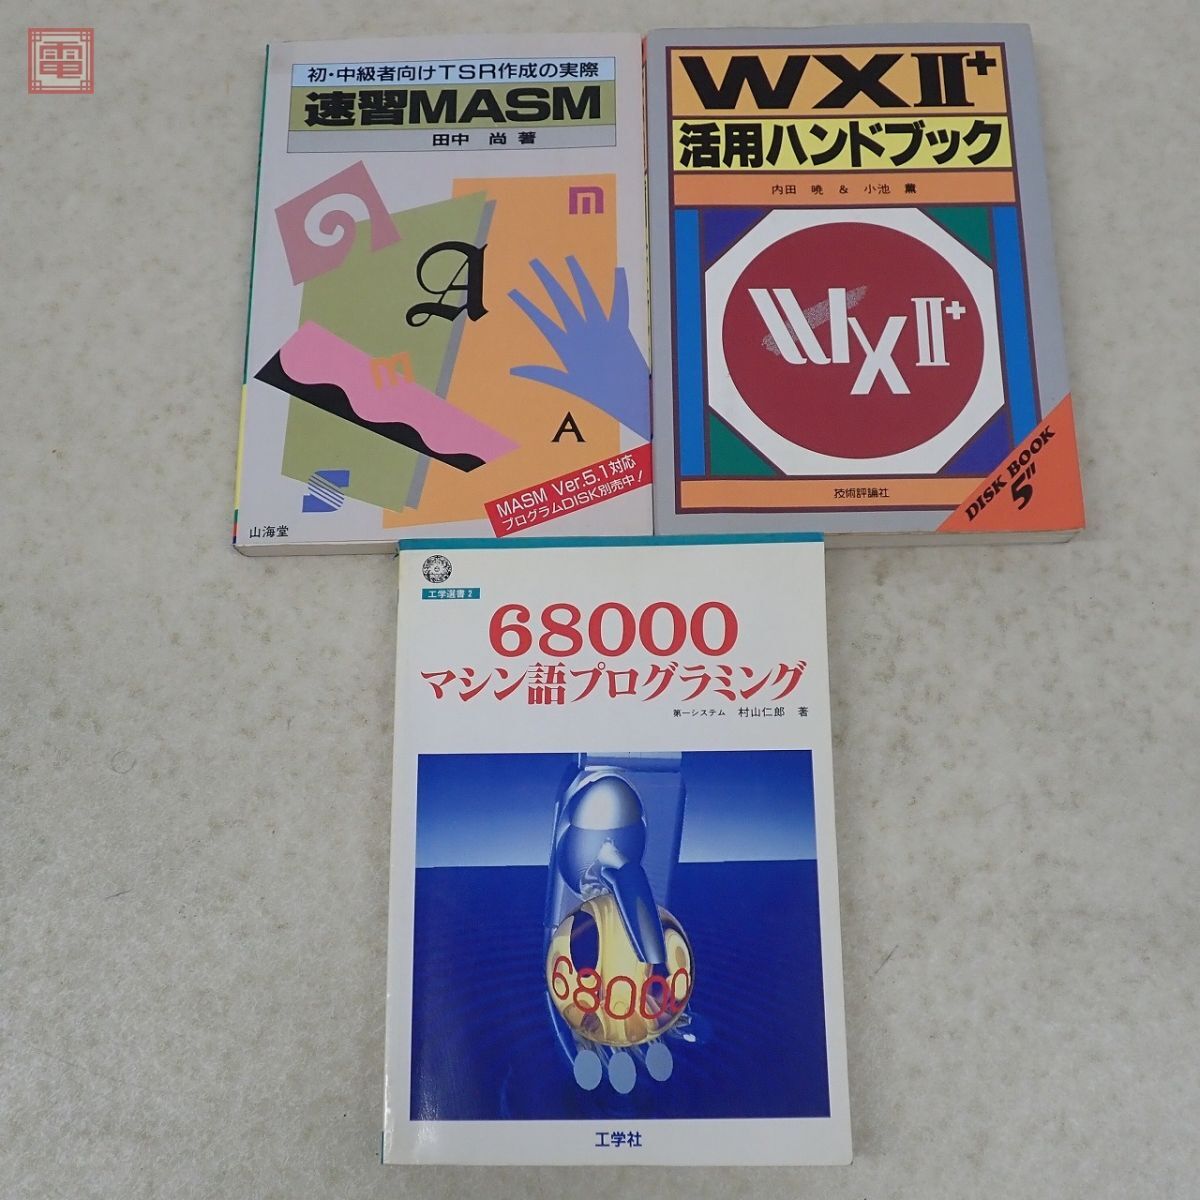 書籍 PC マイコン パソコン 関連 20冊セット 68000プログラミング入門 WXII+ 活用ハンドブック DISK CHARGE マイコン入門 等【20の画像4